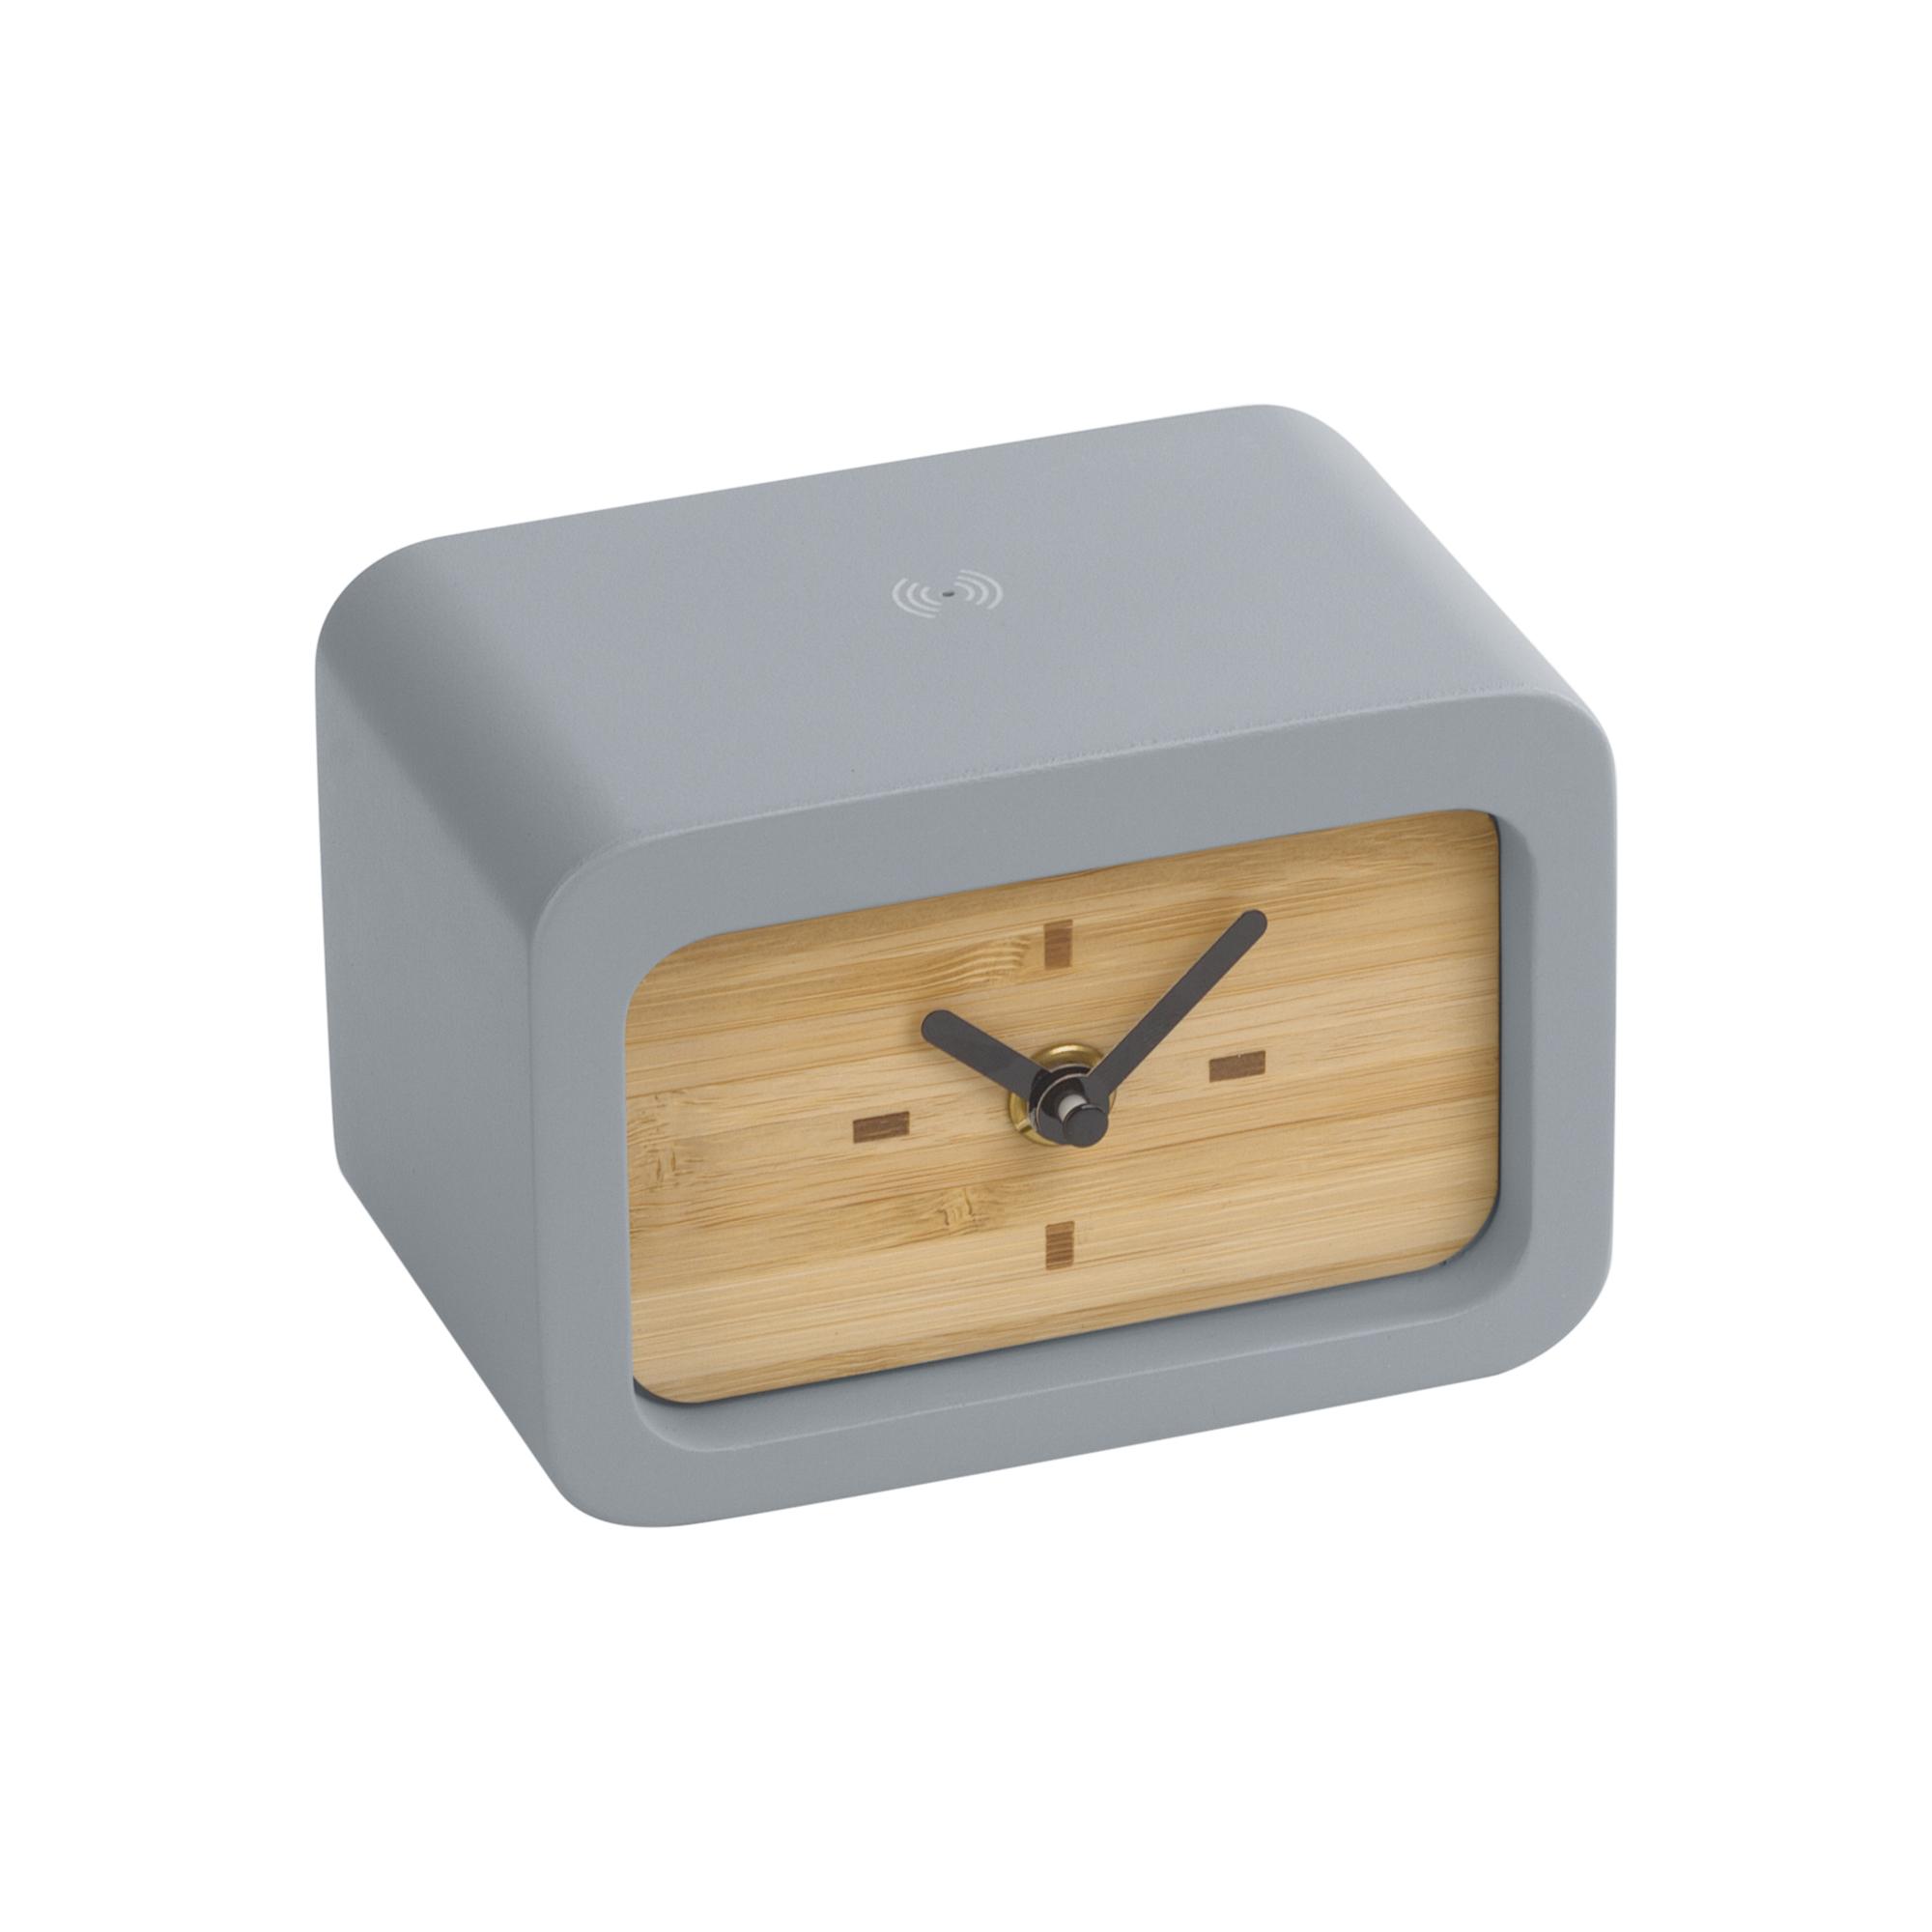 Часы "Stonehenge" с беспроводным зарядным устройством, камень/бамбук, цвет серый/бежевый, фото 1